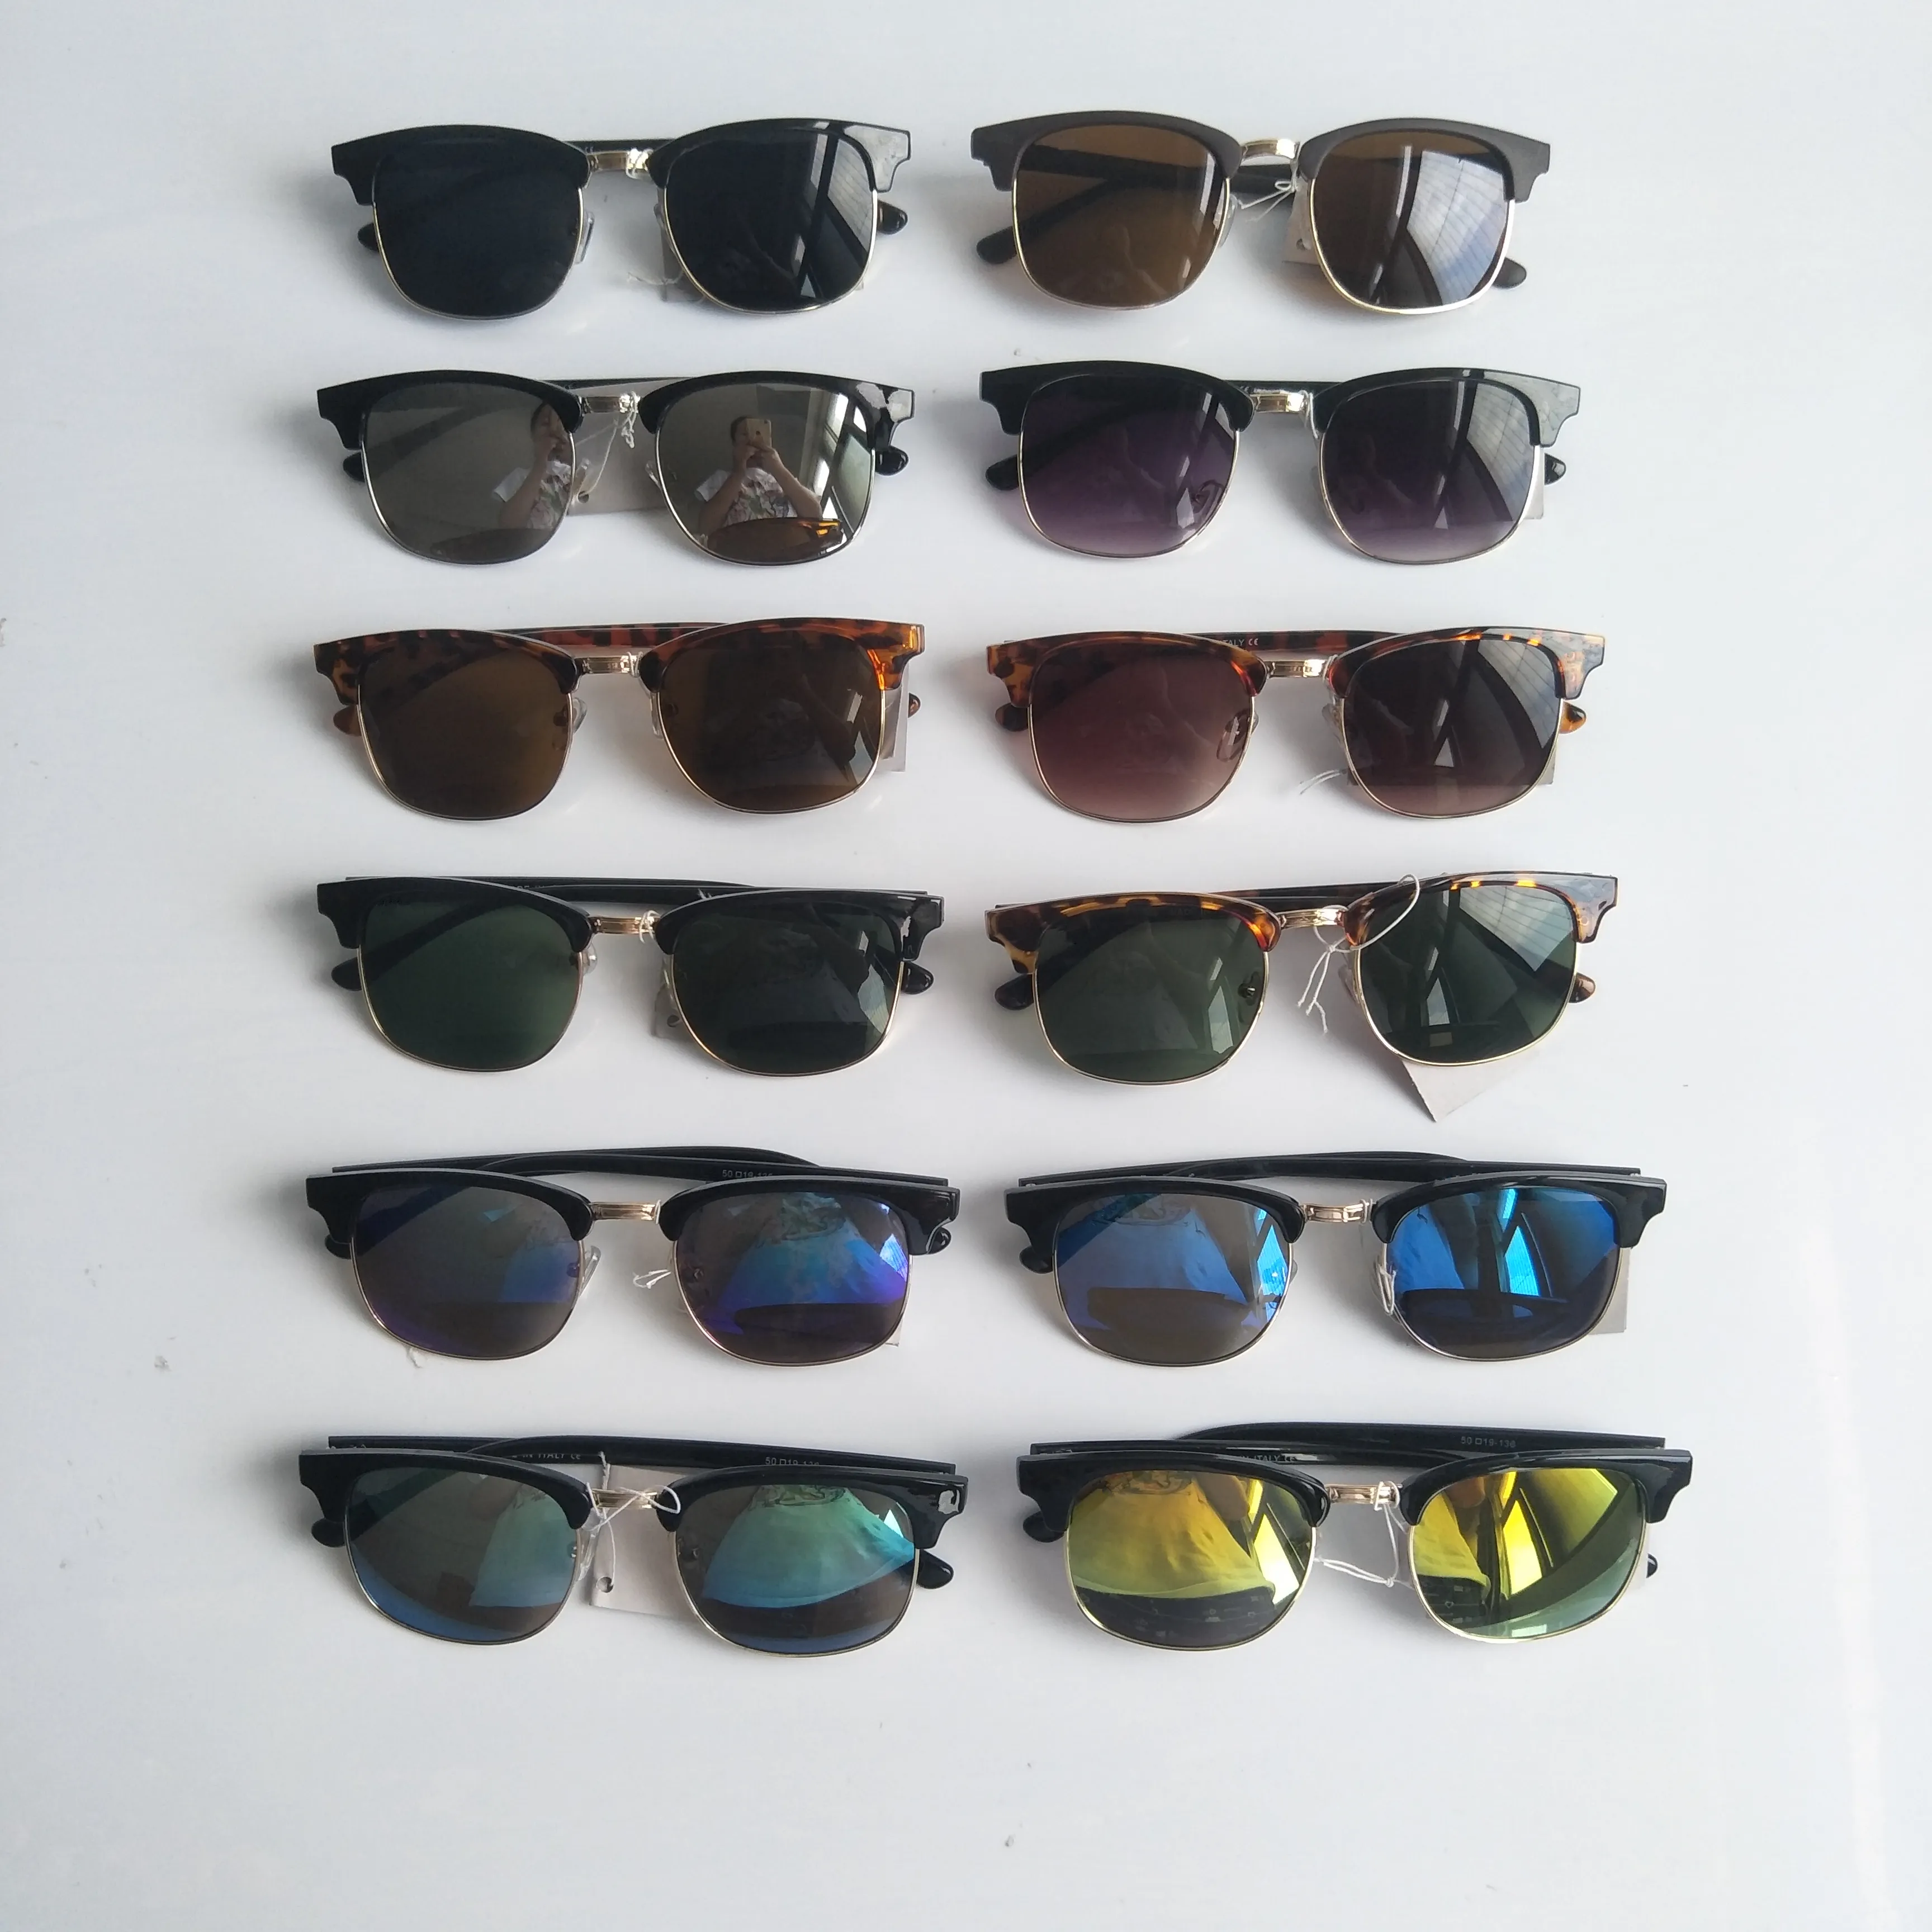 Брендовые солнцезащитные очки для женщин, солнцезащитные очки с защитой от ультрафиолета, мужские солнцезащитные очки для вождения, классические очки унисекс для вождения